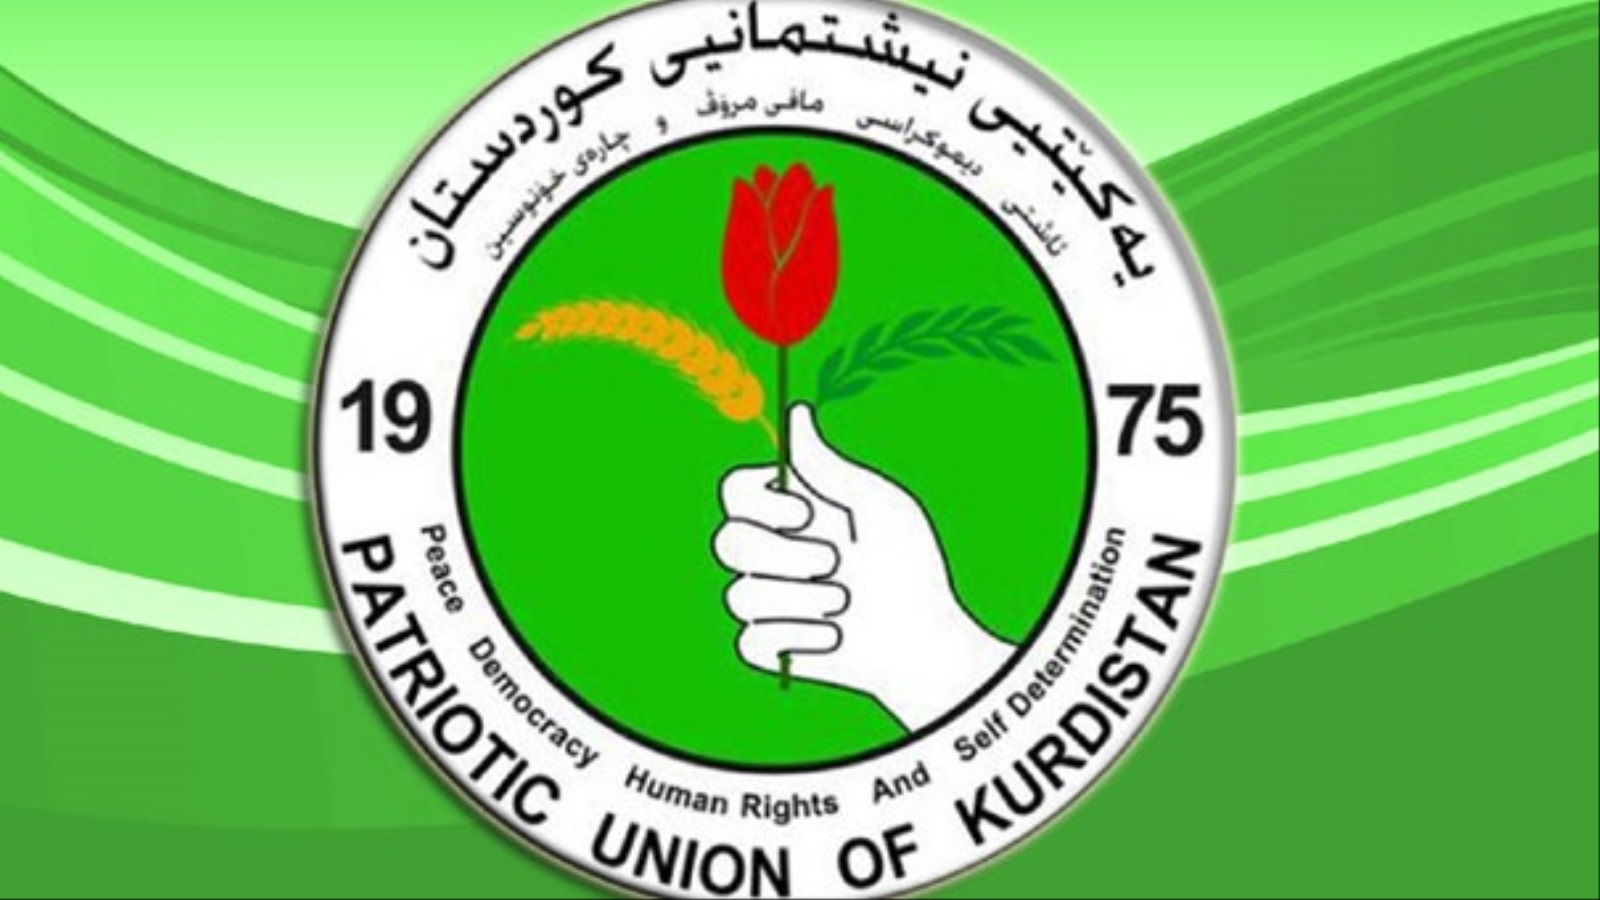 تتمتّع إيران بتأثير على الاتحاد الوطني الكردستاني صاحب الميول اليسارية، وأحد أكبر حزبين كرديين رئيسين في العراق، المتمركز في مدينة السليمانية